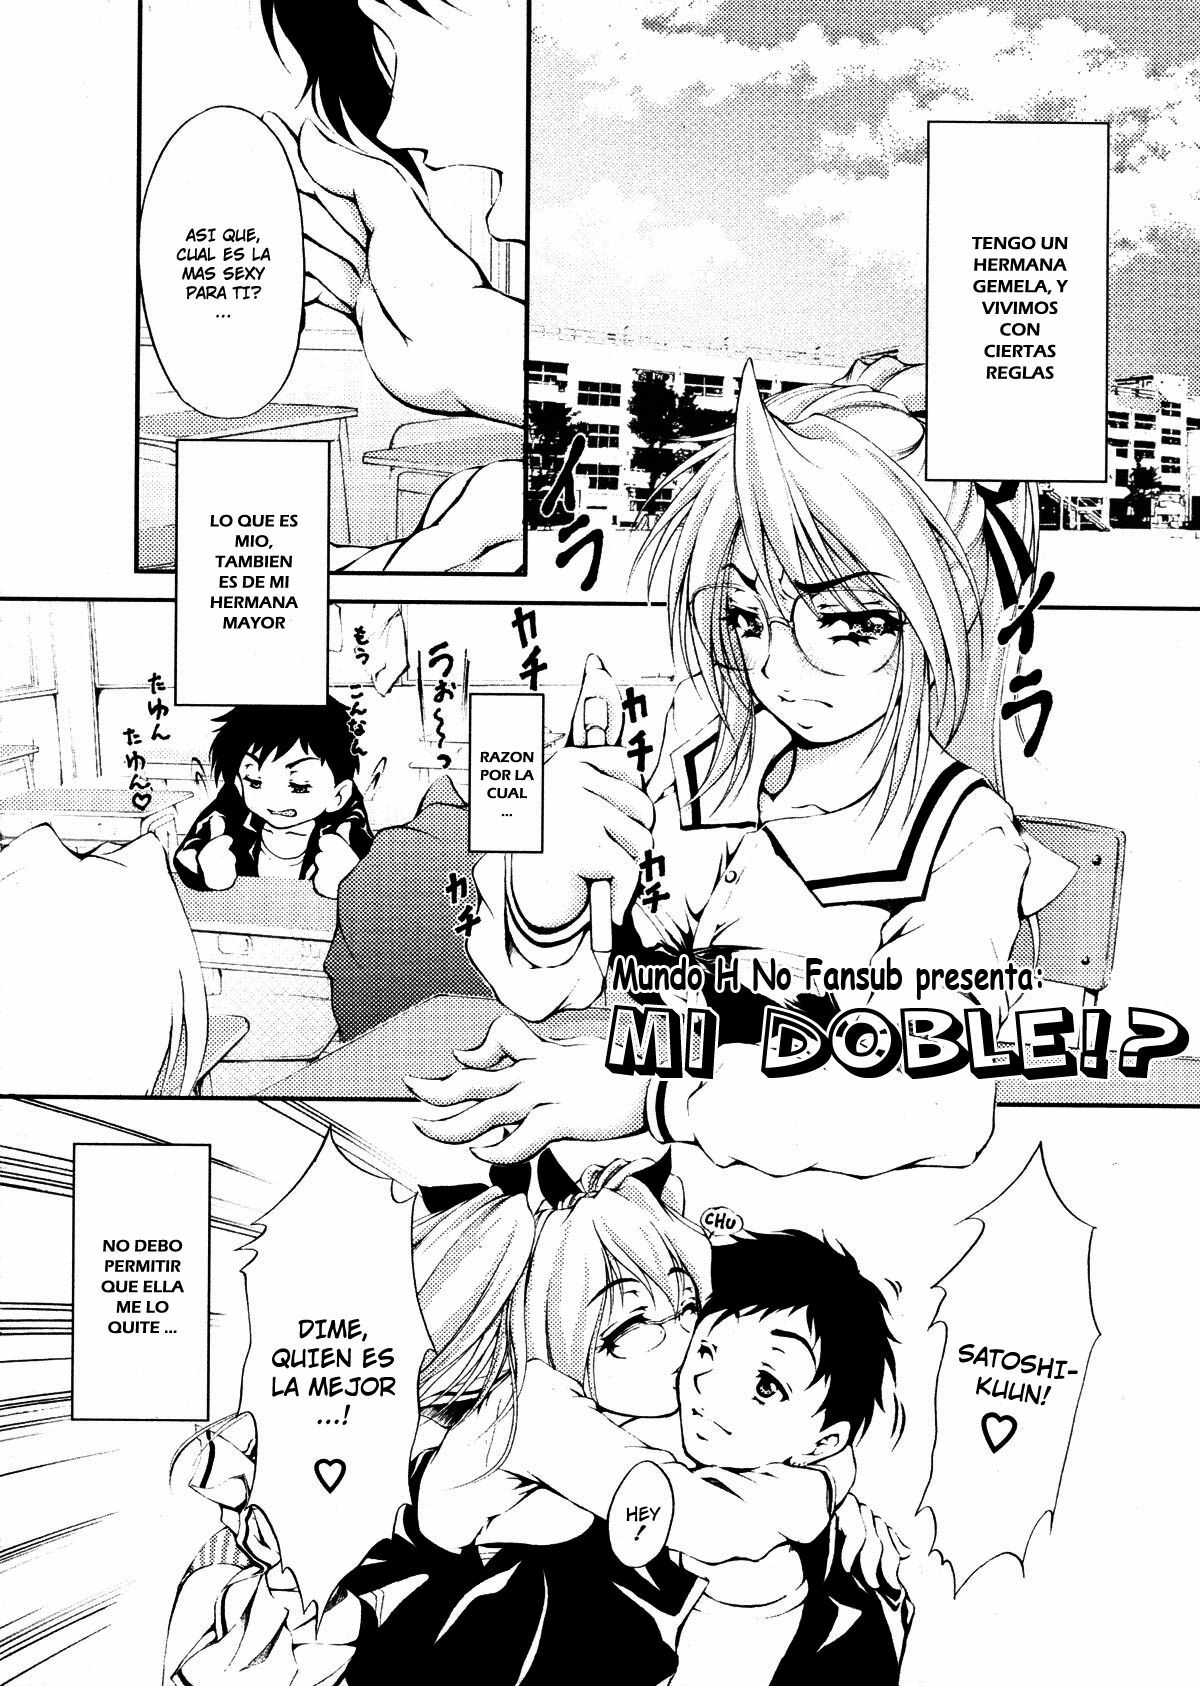 [Kaoru Hodumi] Mi Doble!? [Spanish][MHnF] page 2 full